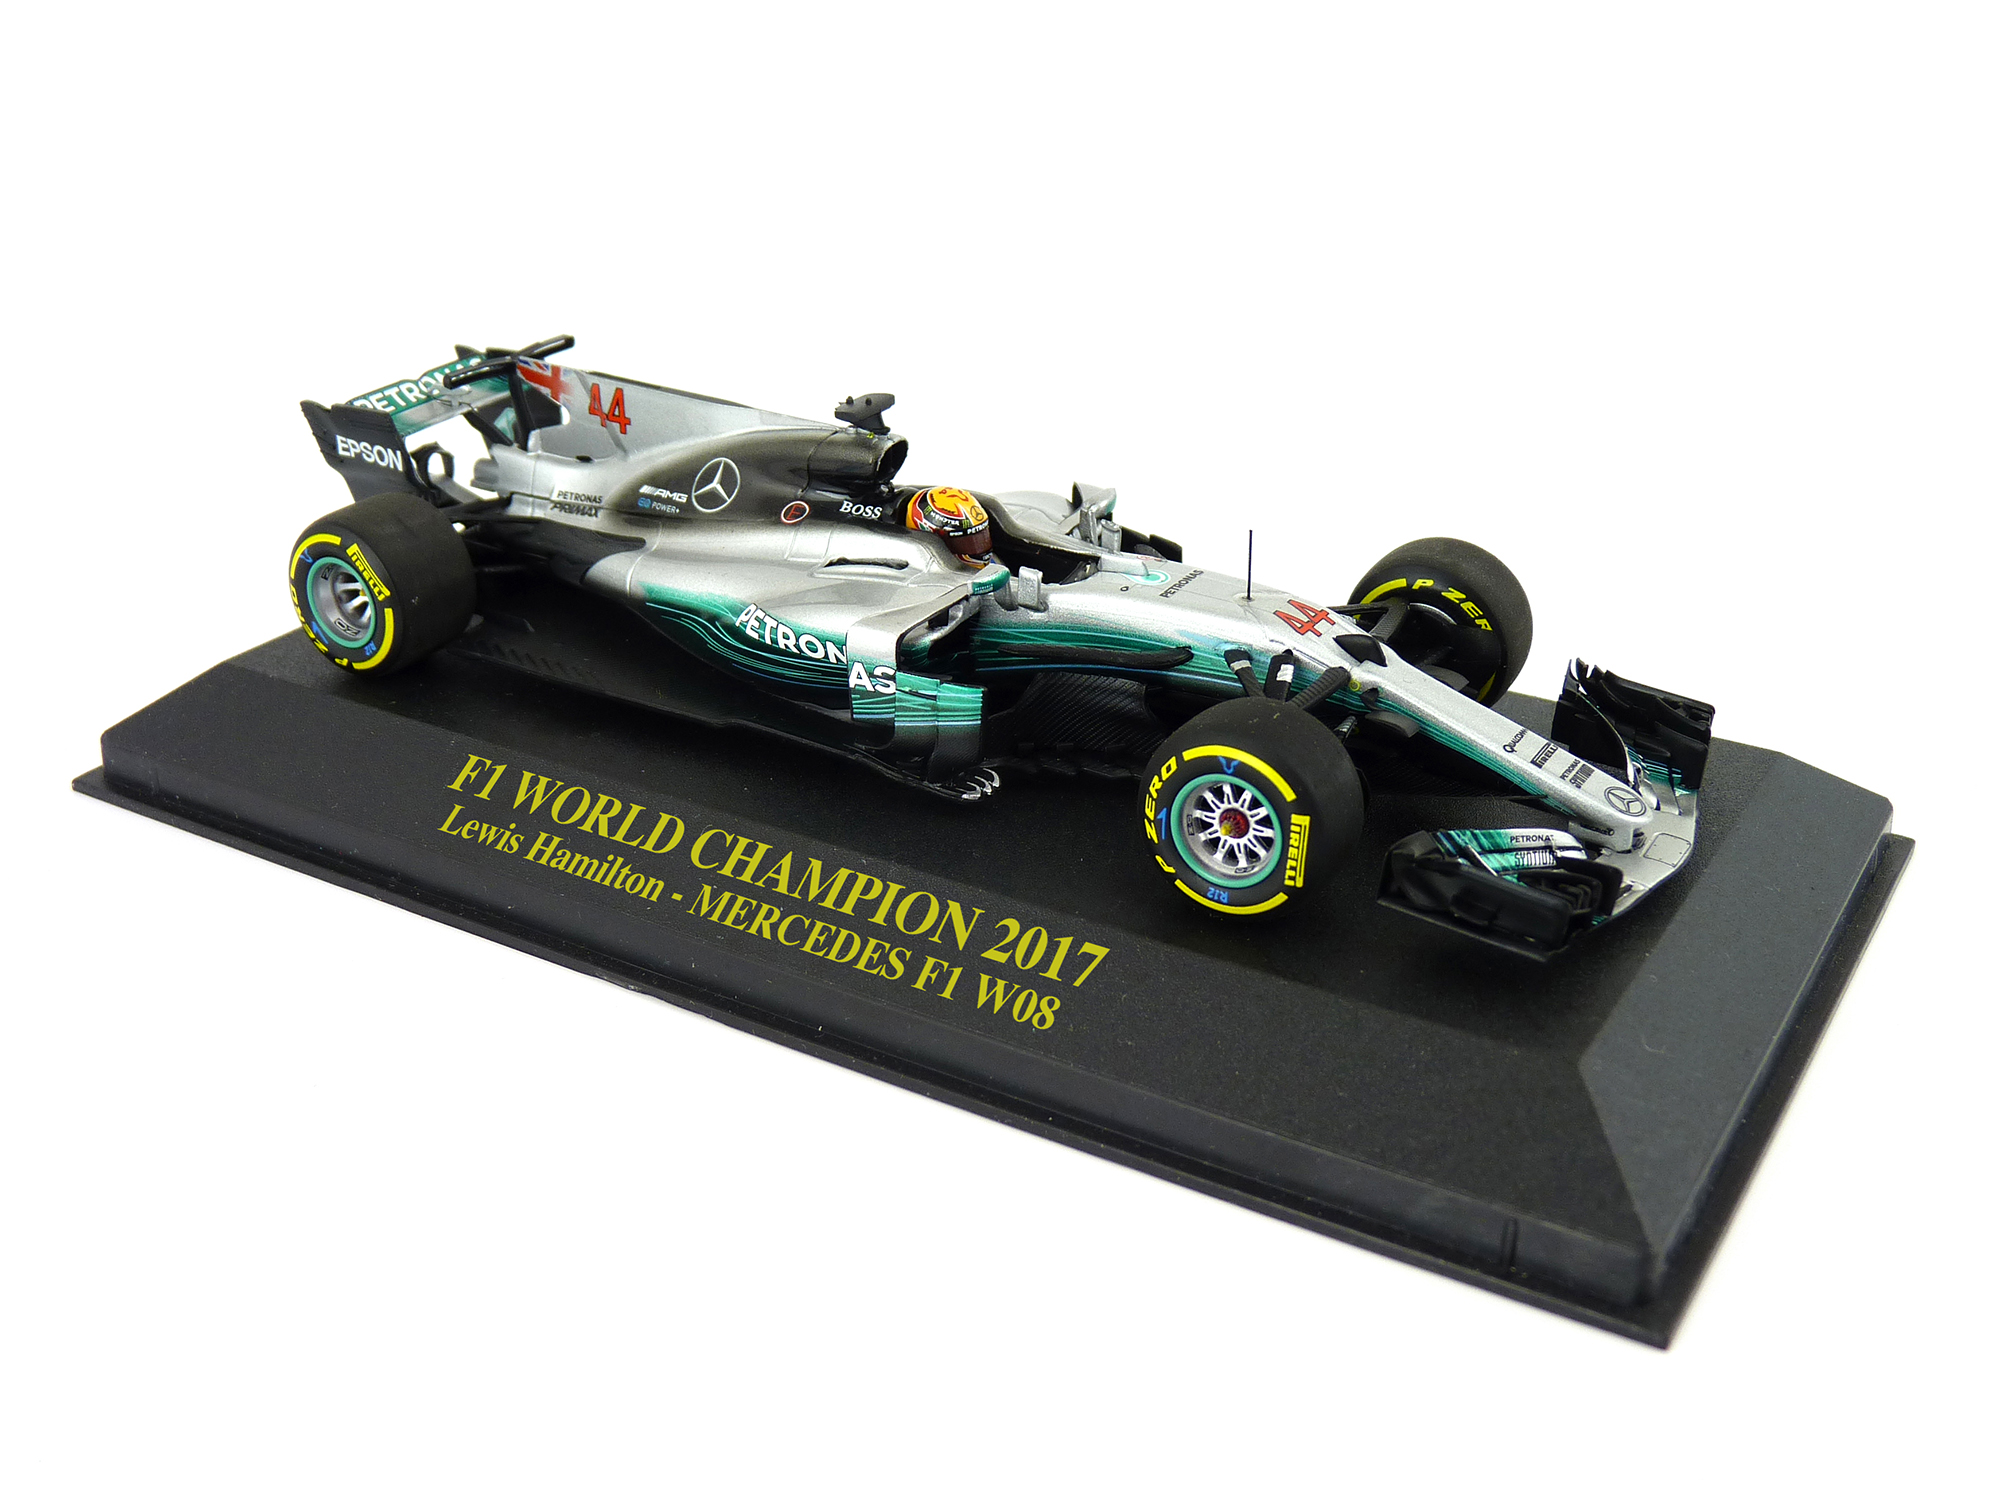 2017 - Lewis Hamilton